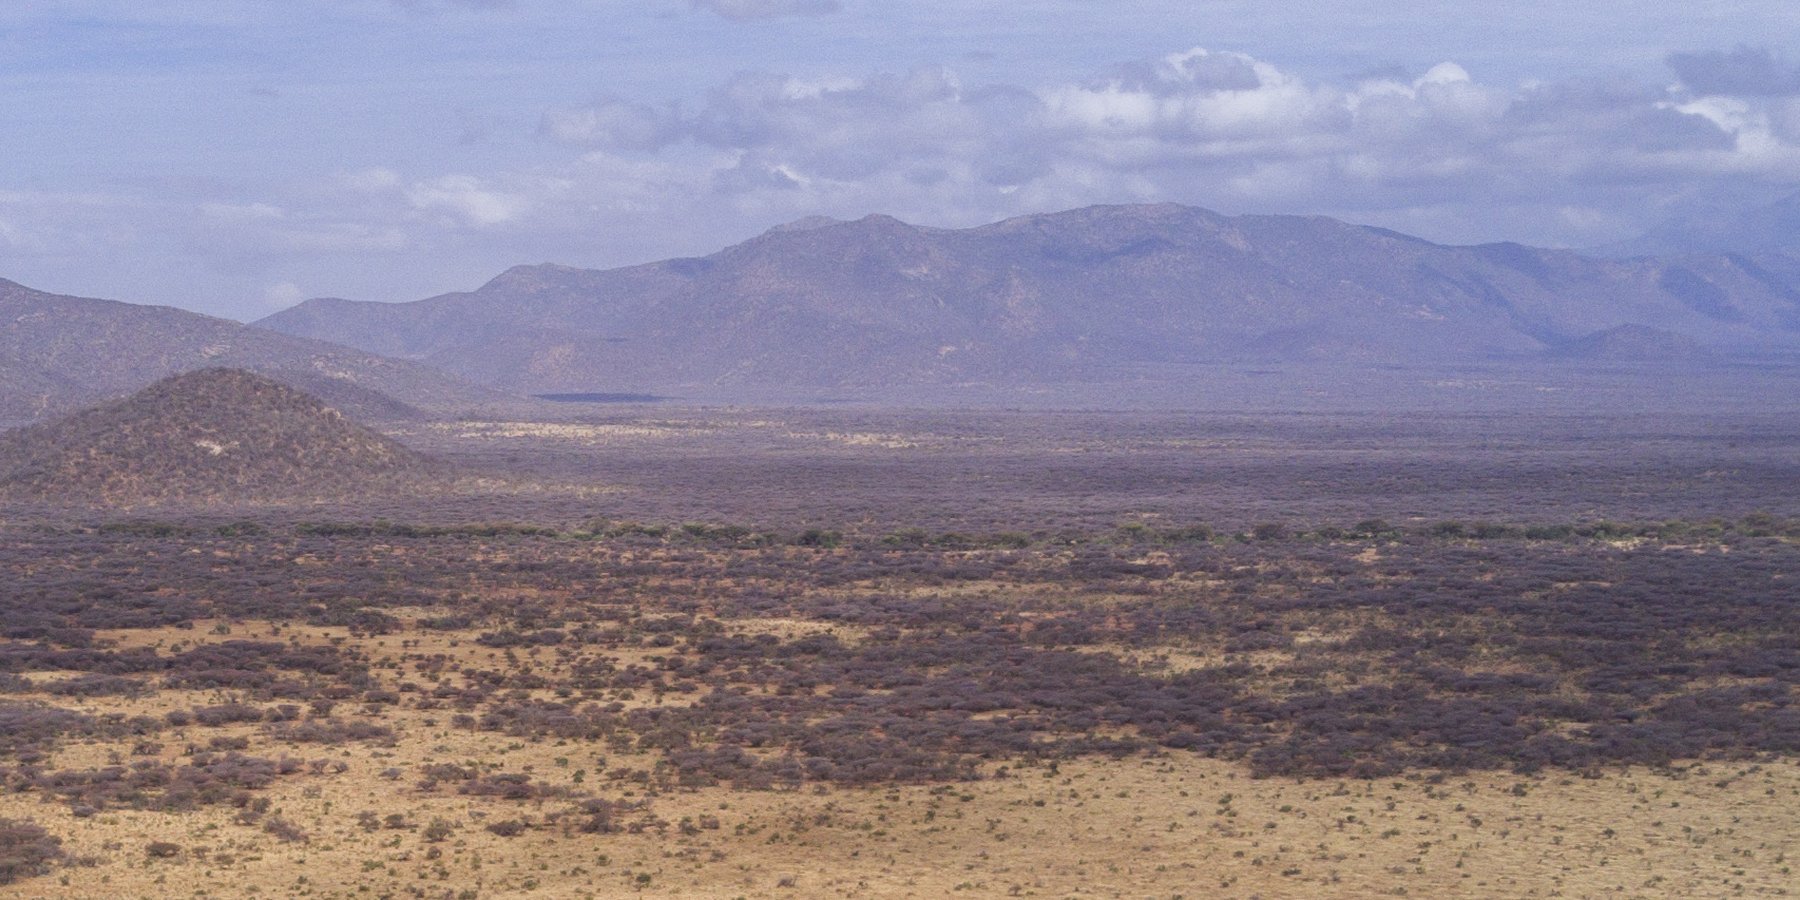 Chaîne de collines caractéristique de Kalama Wildlife Community Conservancy, à partir de laquelle le nom de Kalama est dérivé.